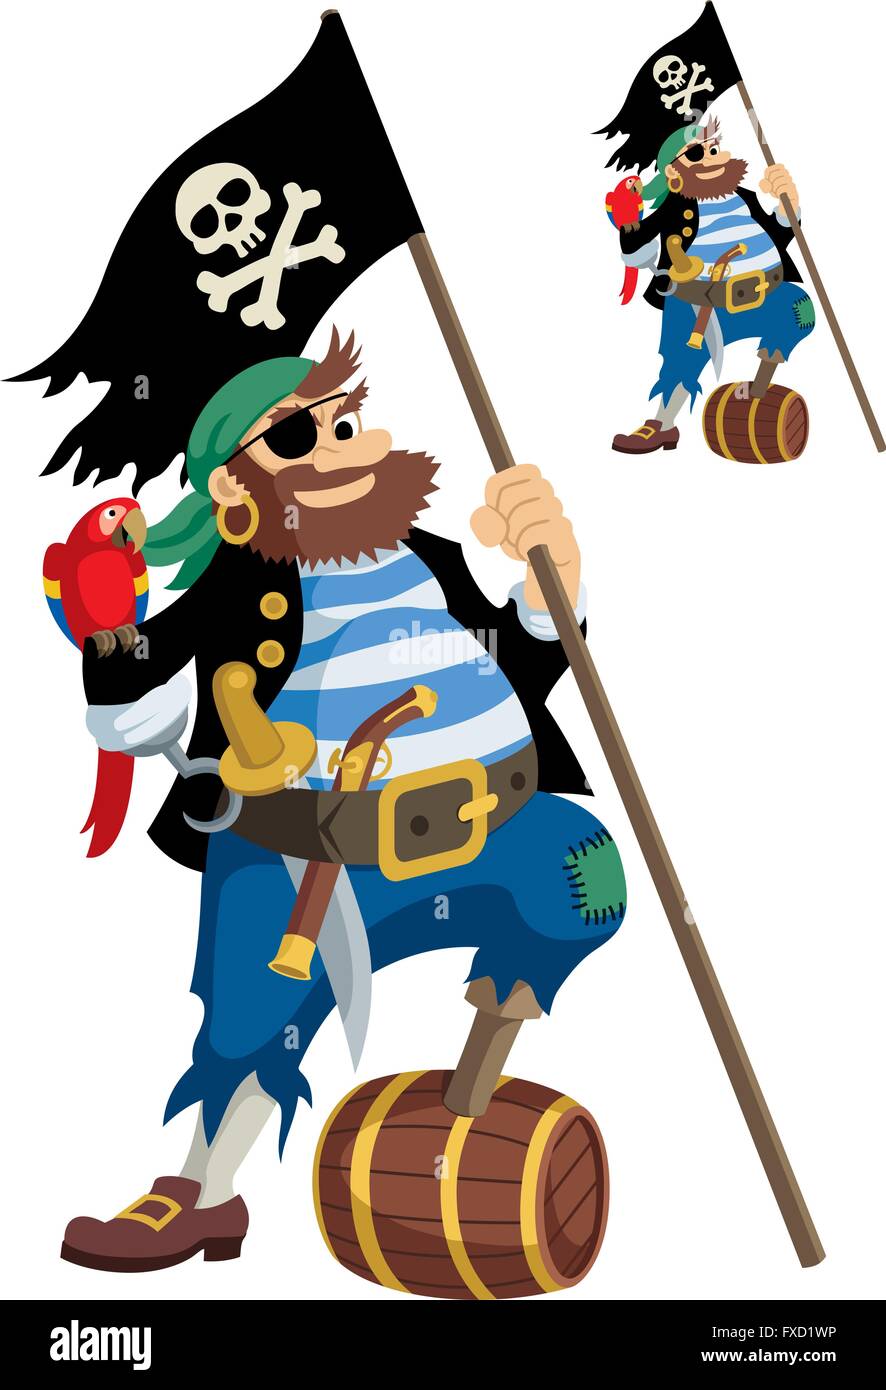 Felice pirata con tutti i suoi accessori. Sulla piccola immagine è lo stesso pirata, ma senza sfumature. Illustrazione Vettoriale